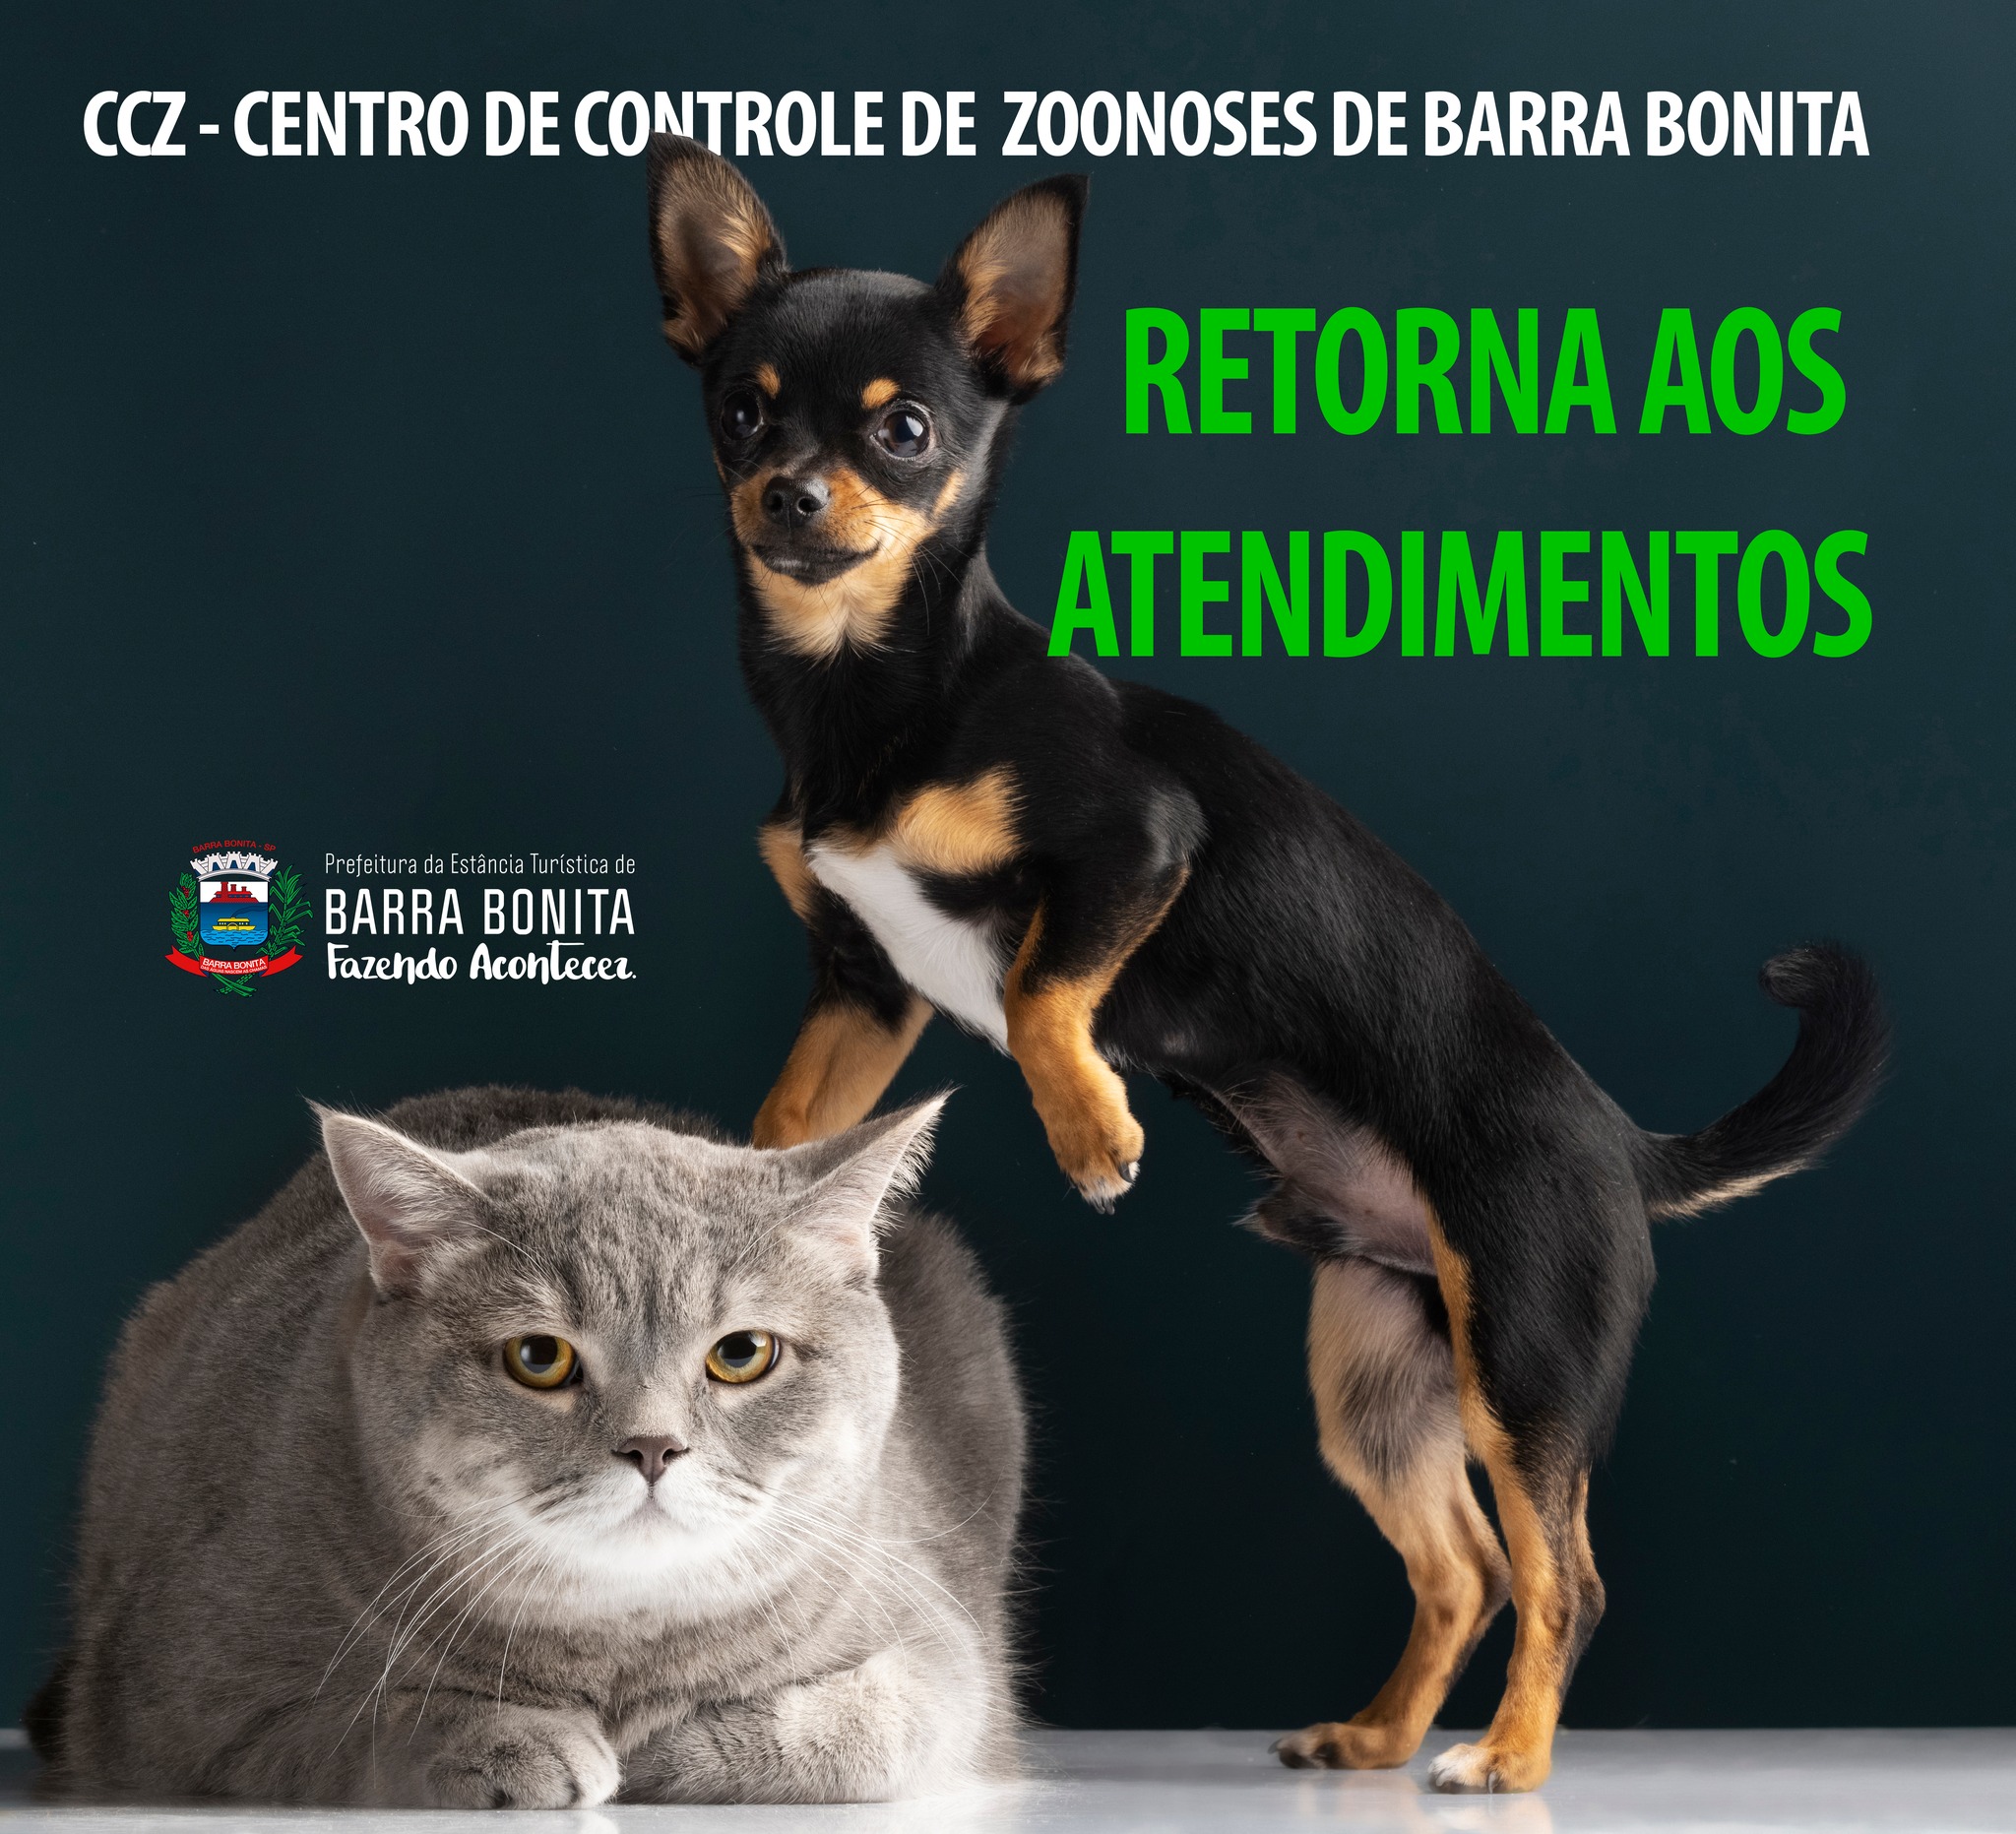 CCZ - CENTRO DE CONTROLE DE ZOONOSES DE BARRA BONITA RETORNA AOS ATENDIMENTOS